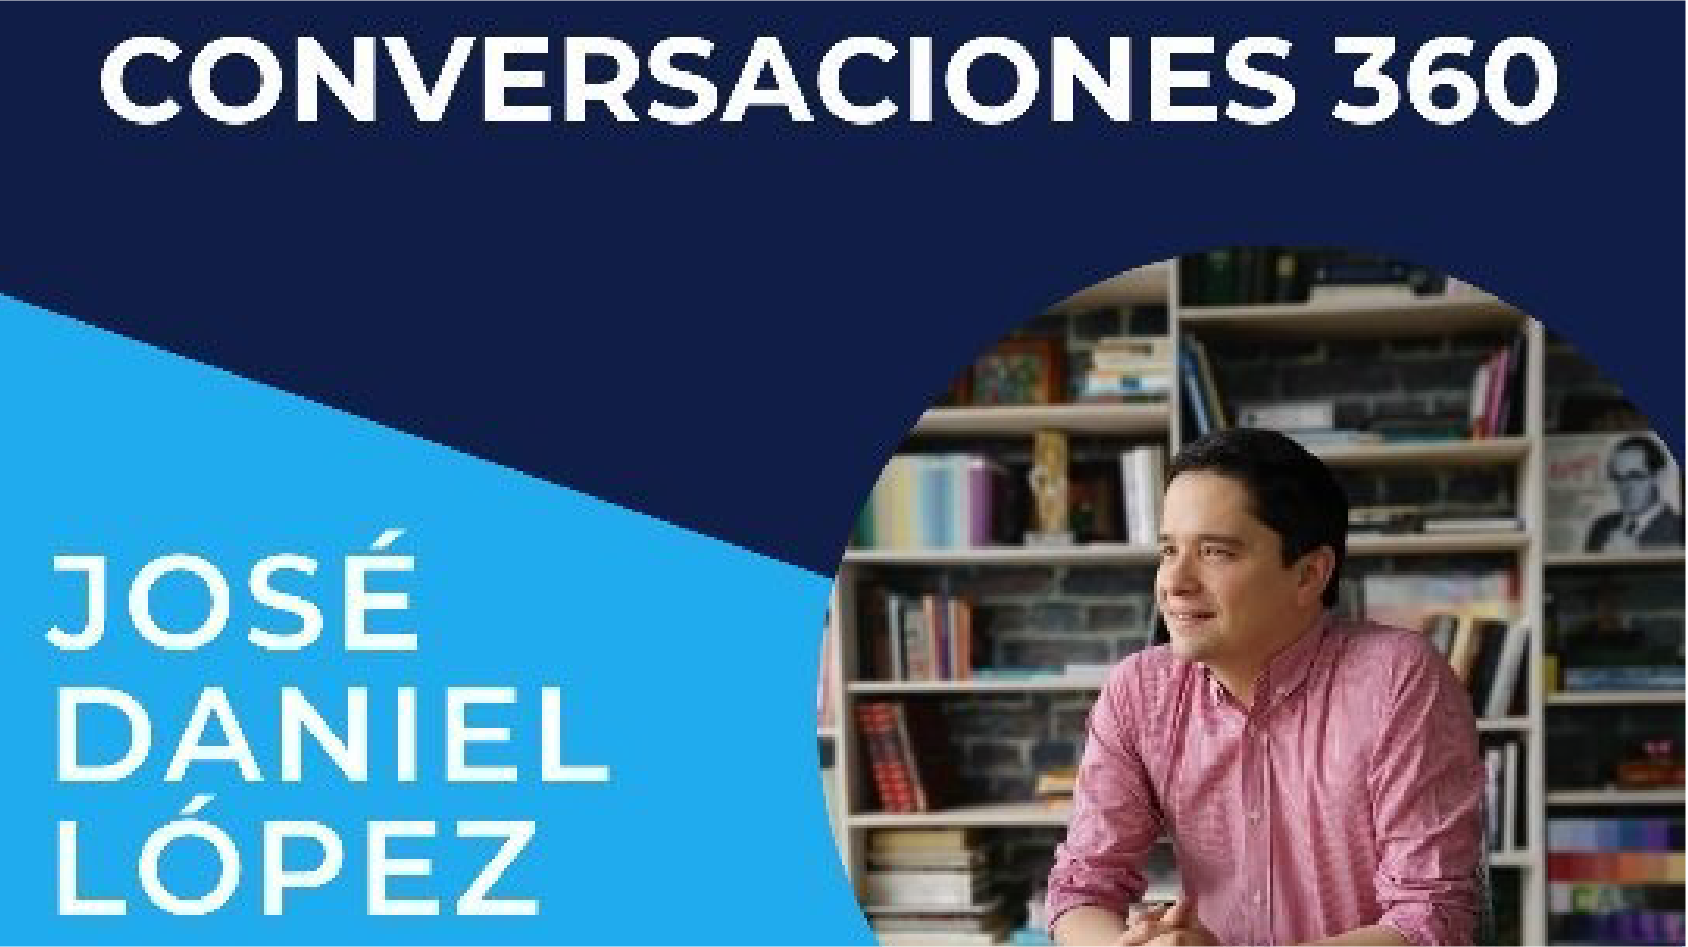 #Conversaciones360 con José Daniel López, hablamos sobre plataformas digitales e innovación. v3